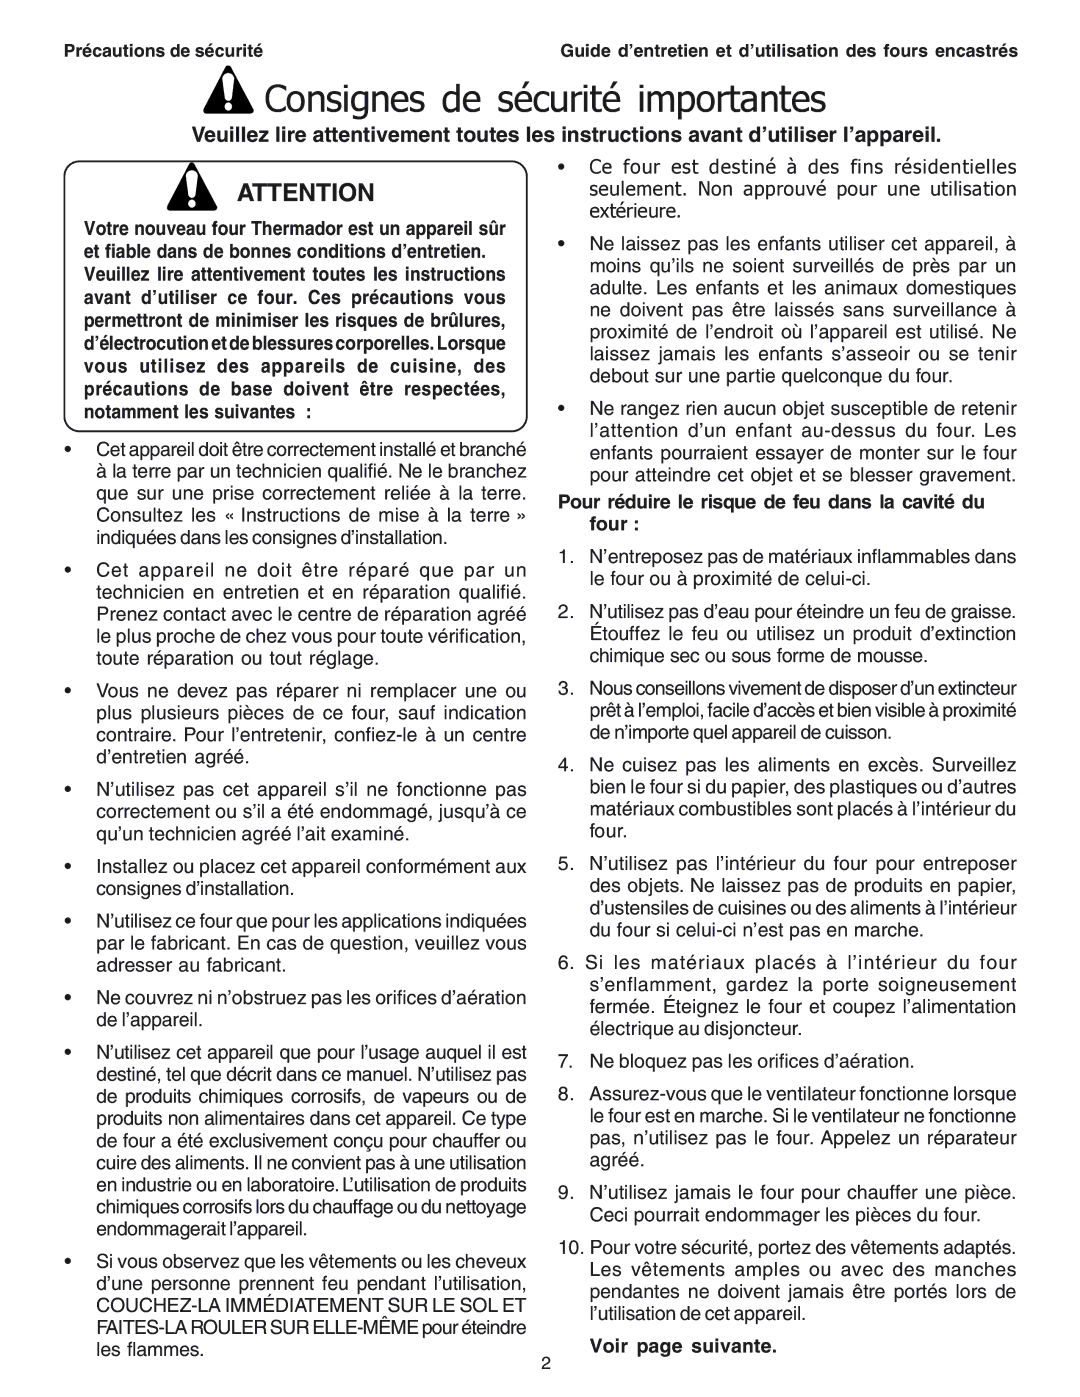 Thermador SEC271 manual Consignes de sécurité importantes, Pour réduire le risque de feu dans la cavité du four 